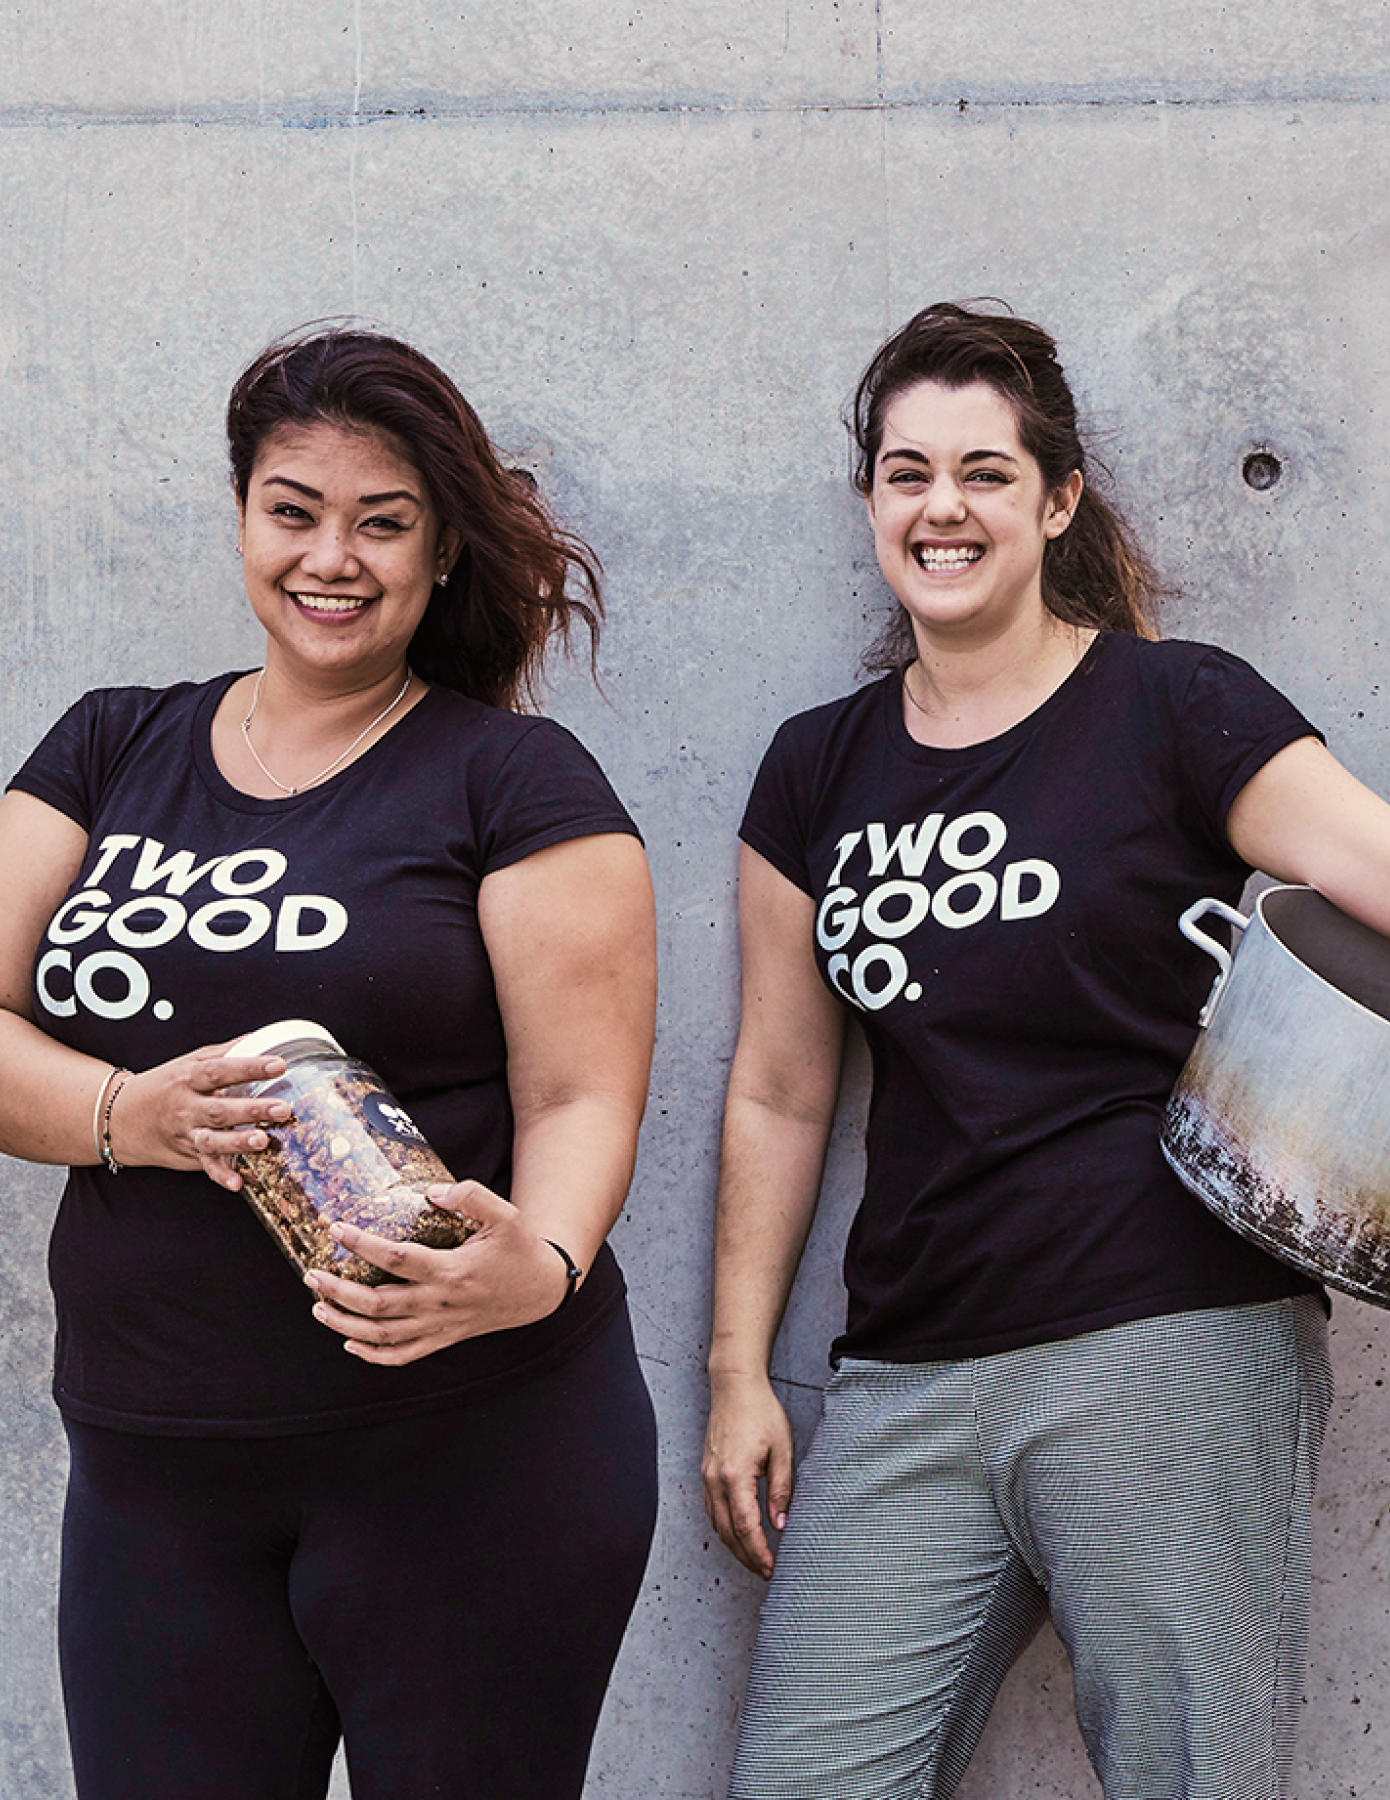 Two Women wearing Two Good Co. shirts smiling